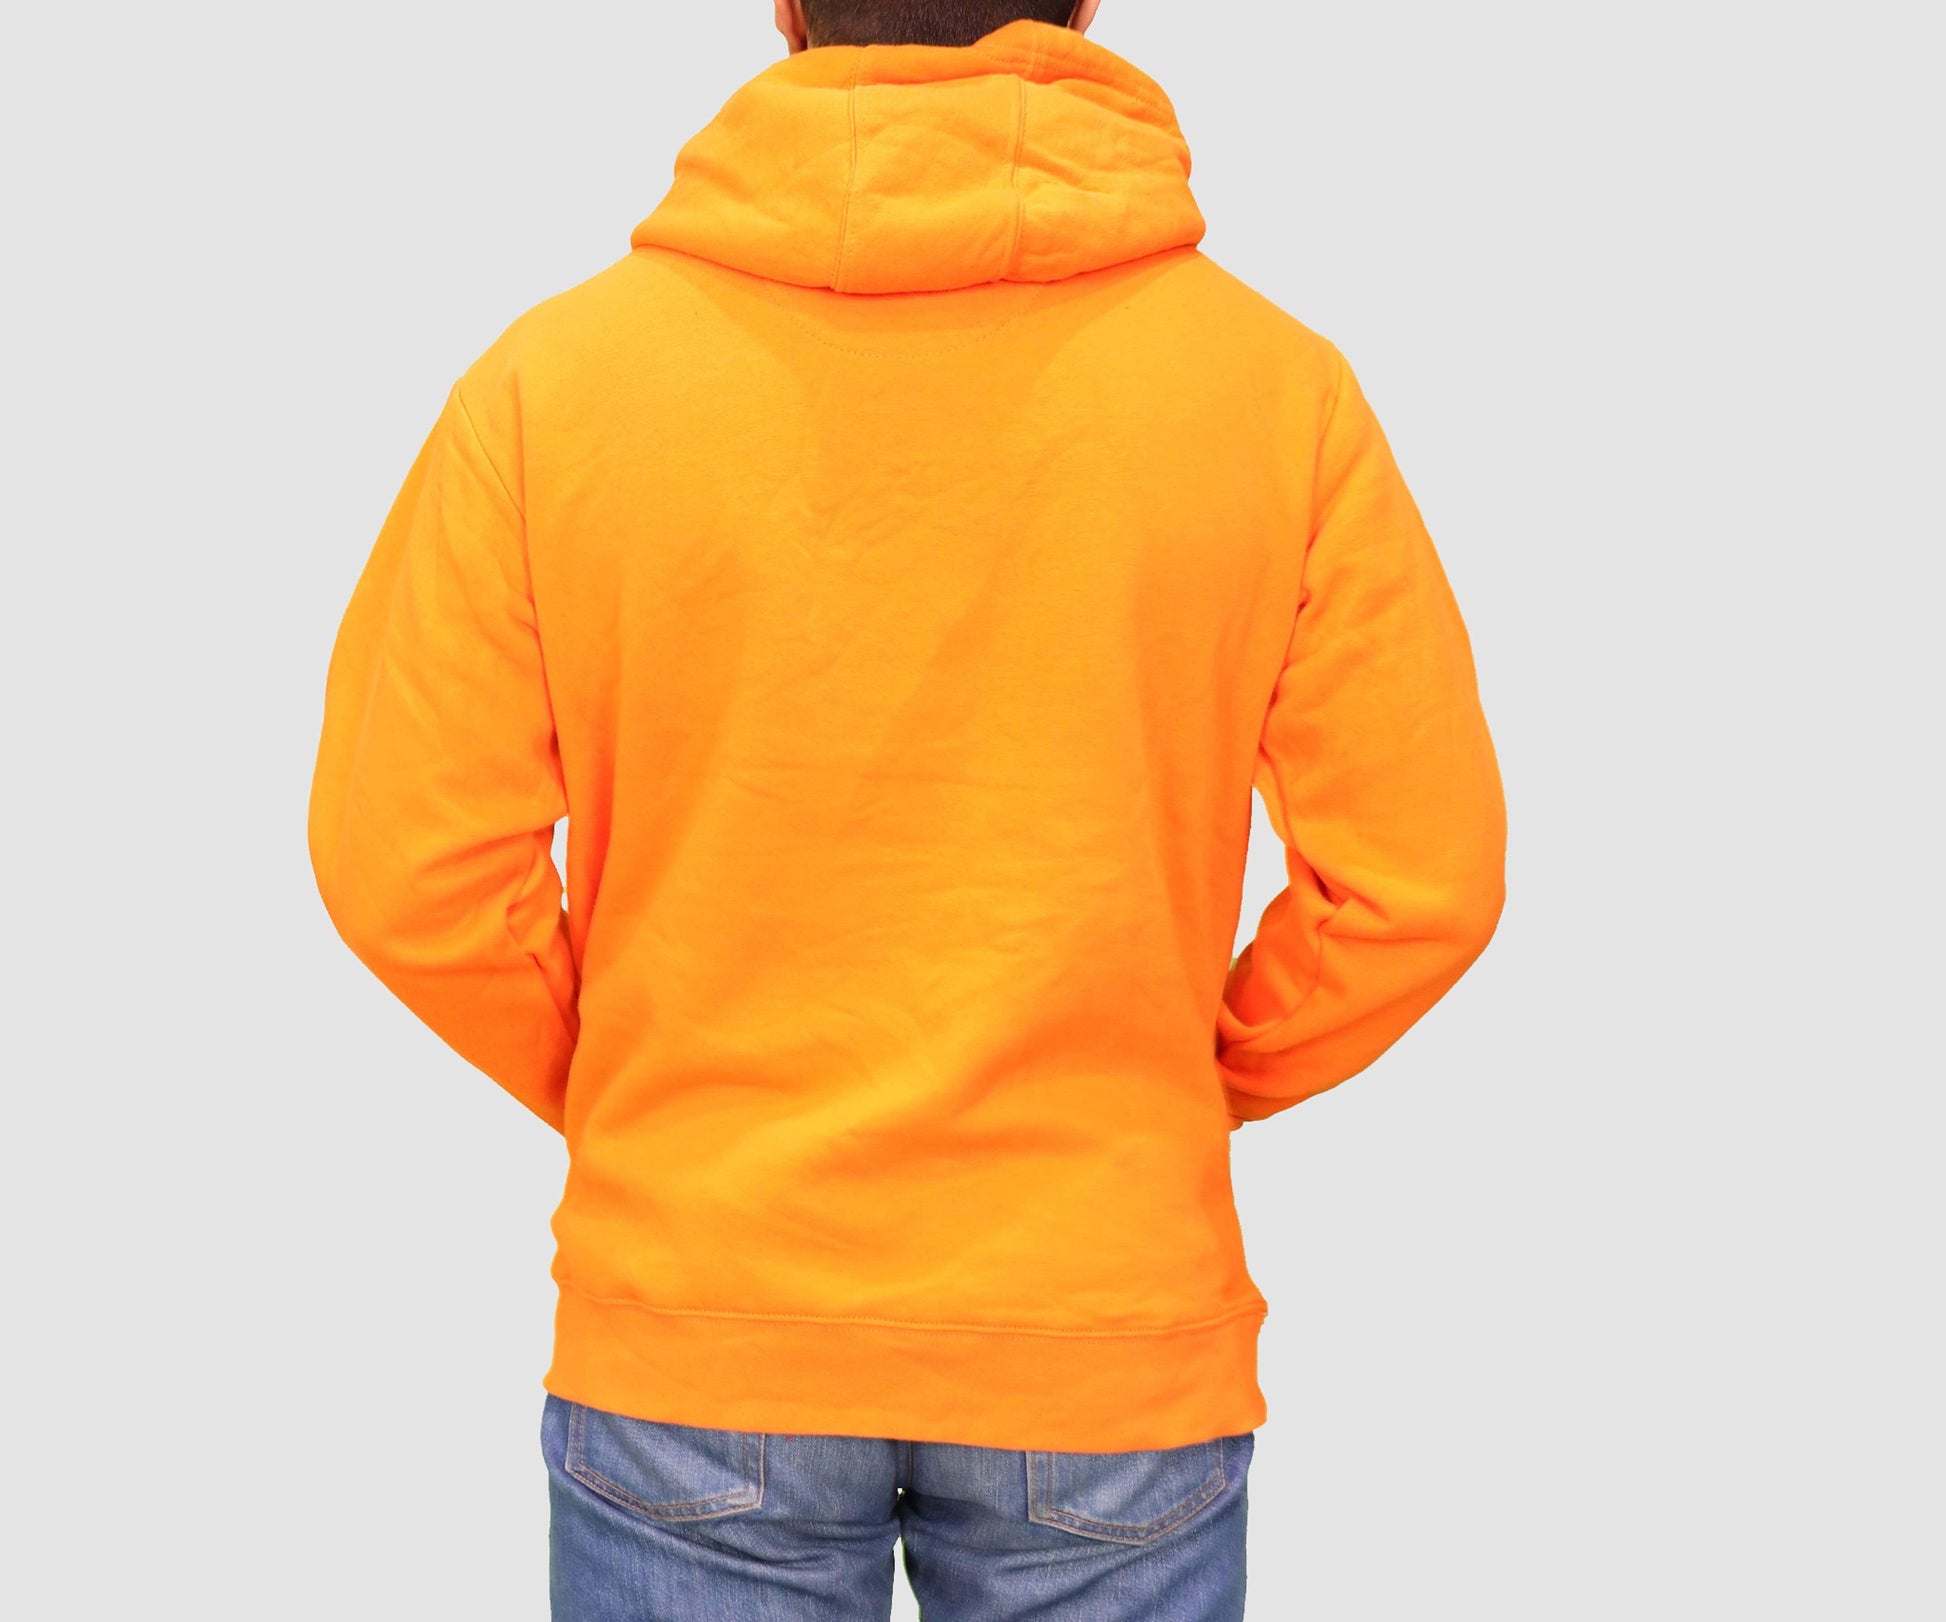 BRANDS & BEYOND Mens Tops Large / Orange Hoodie